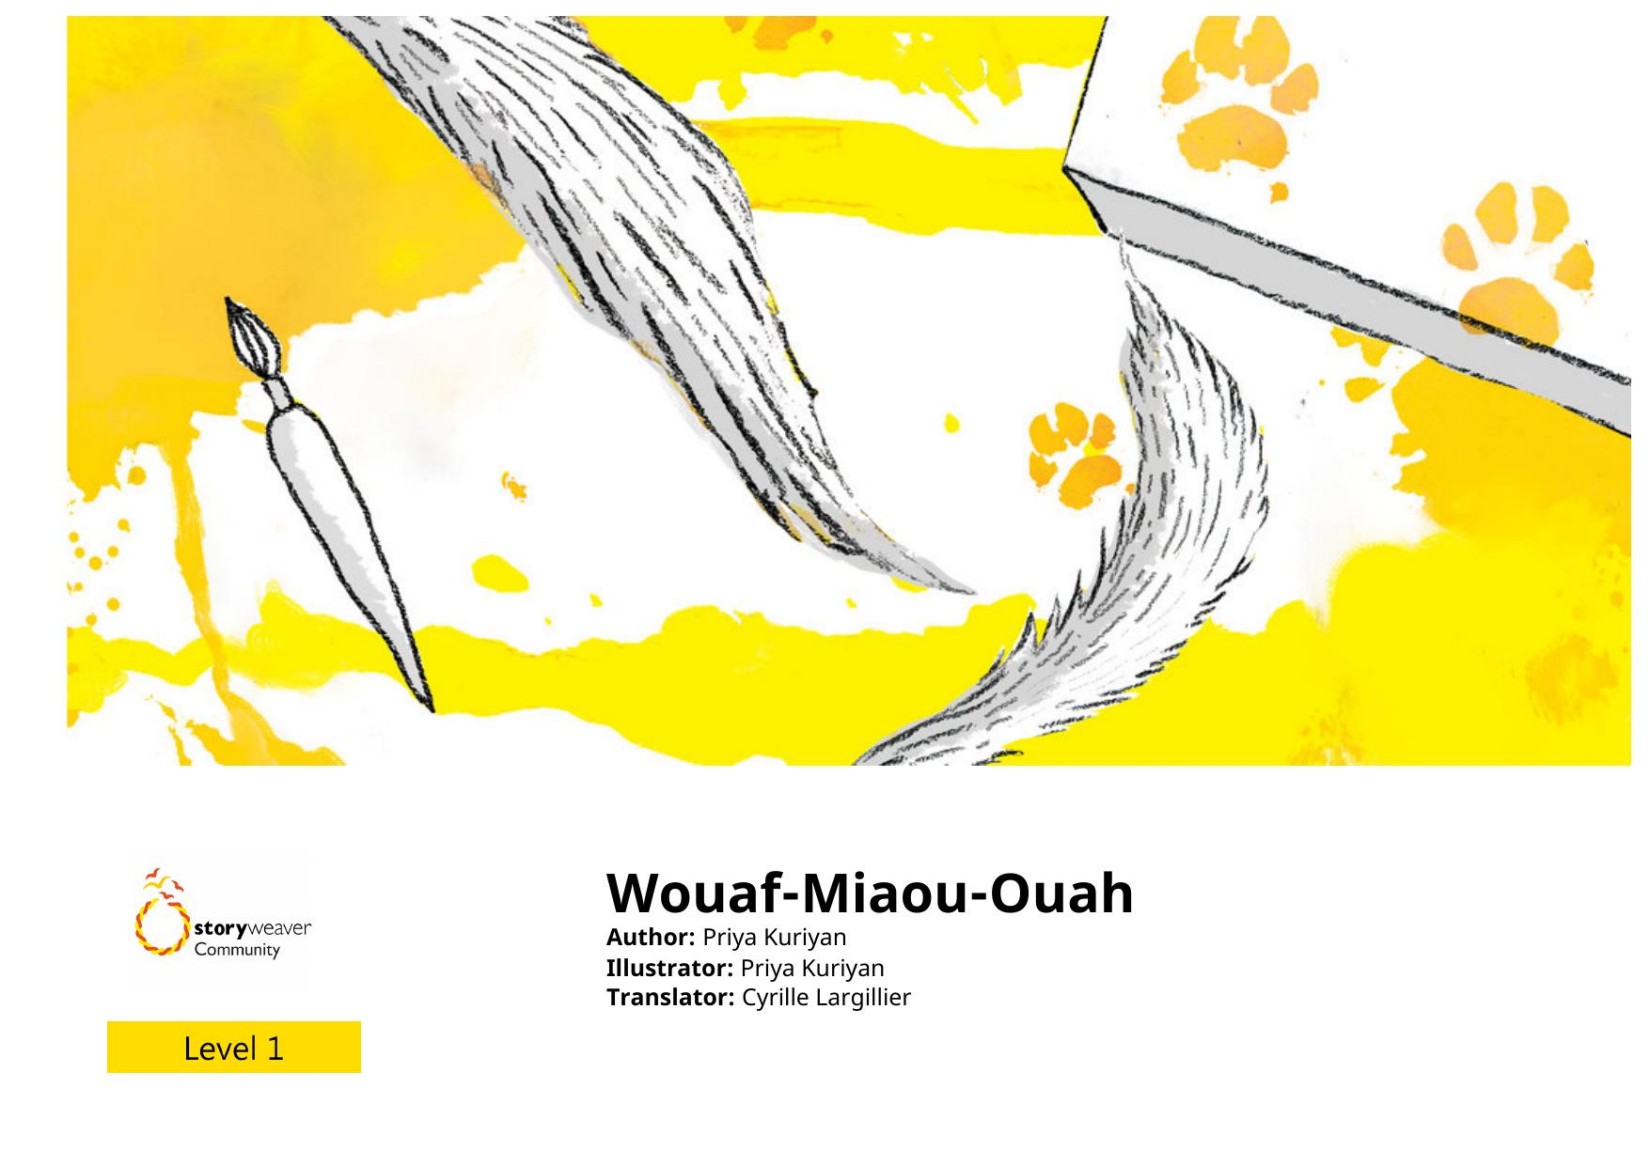 Wouaf-Miaou-Ouah